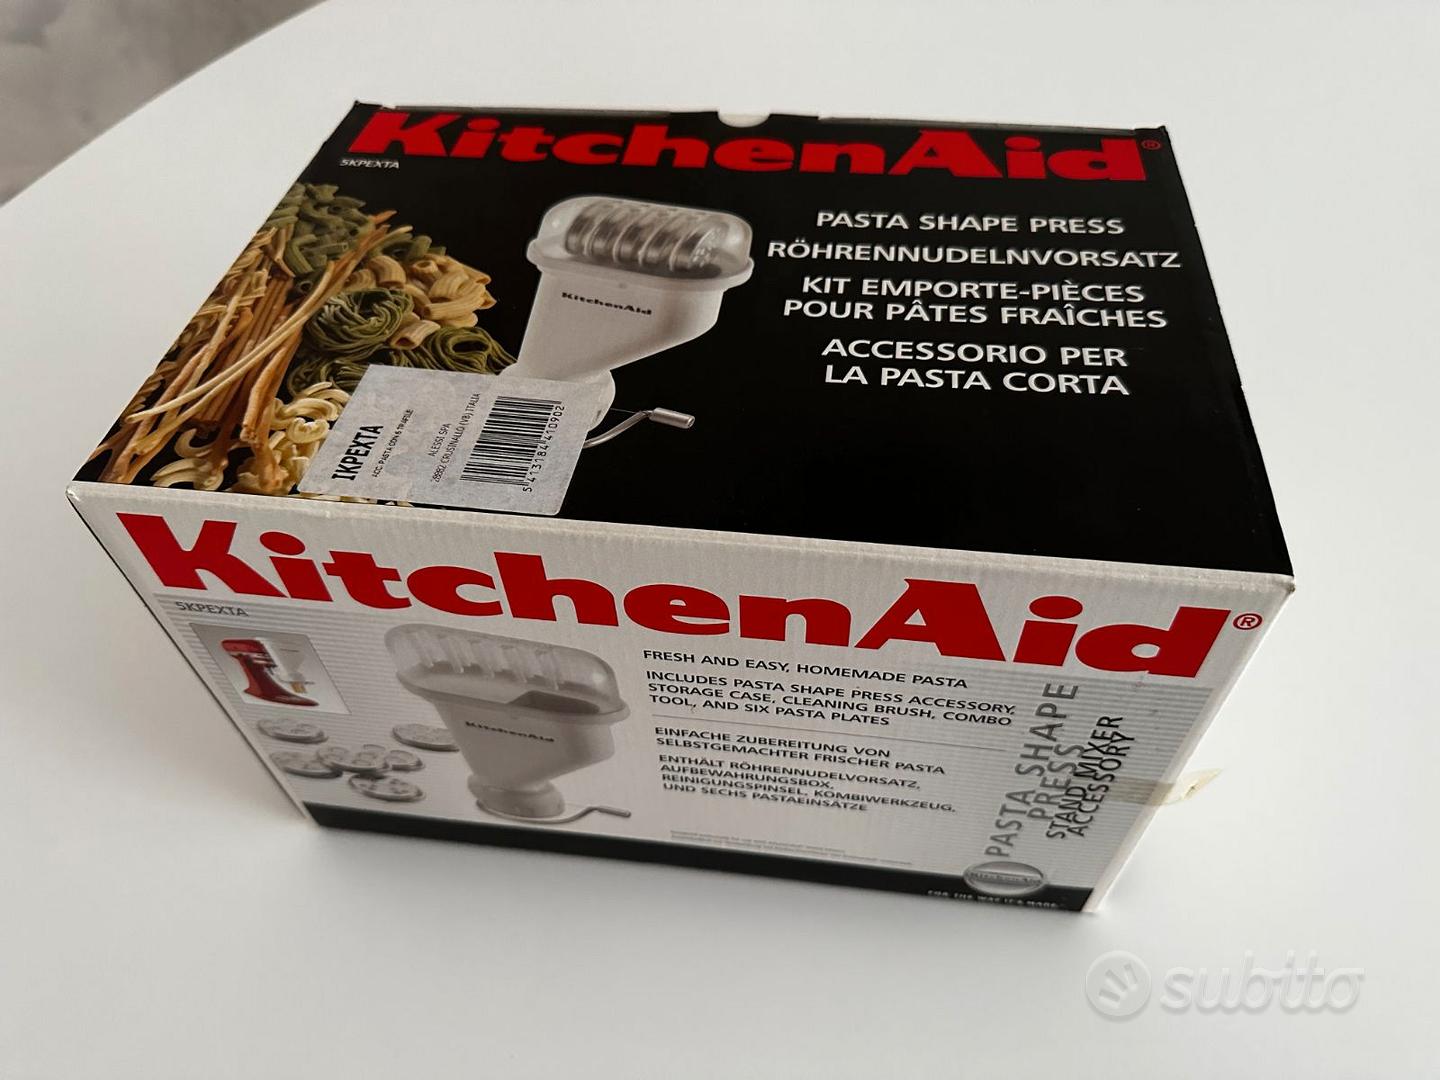 Accessorio per pasta corta KitchenAid 5KPEXTA - Elettrodomestici